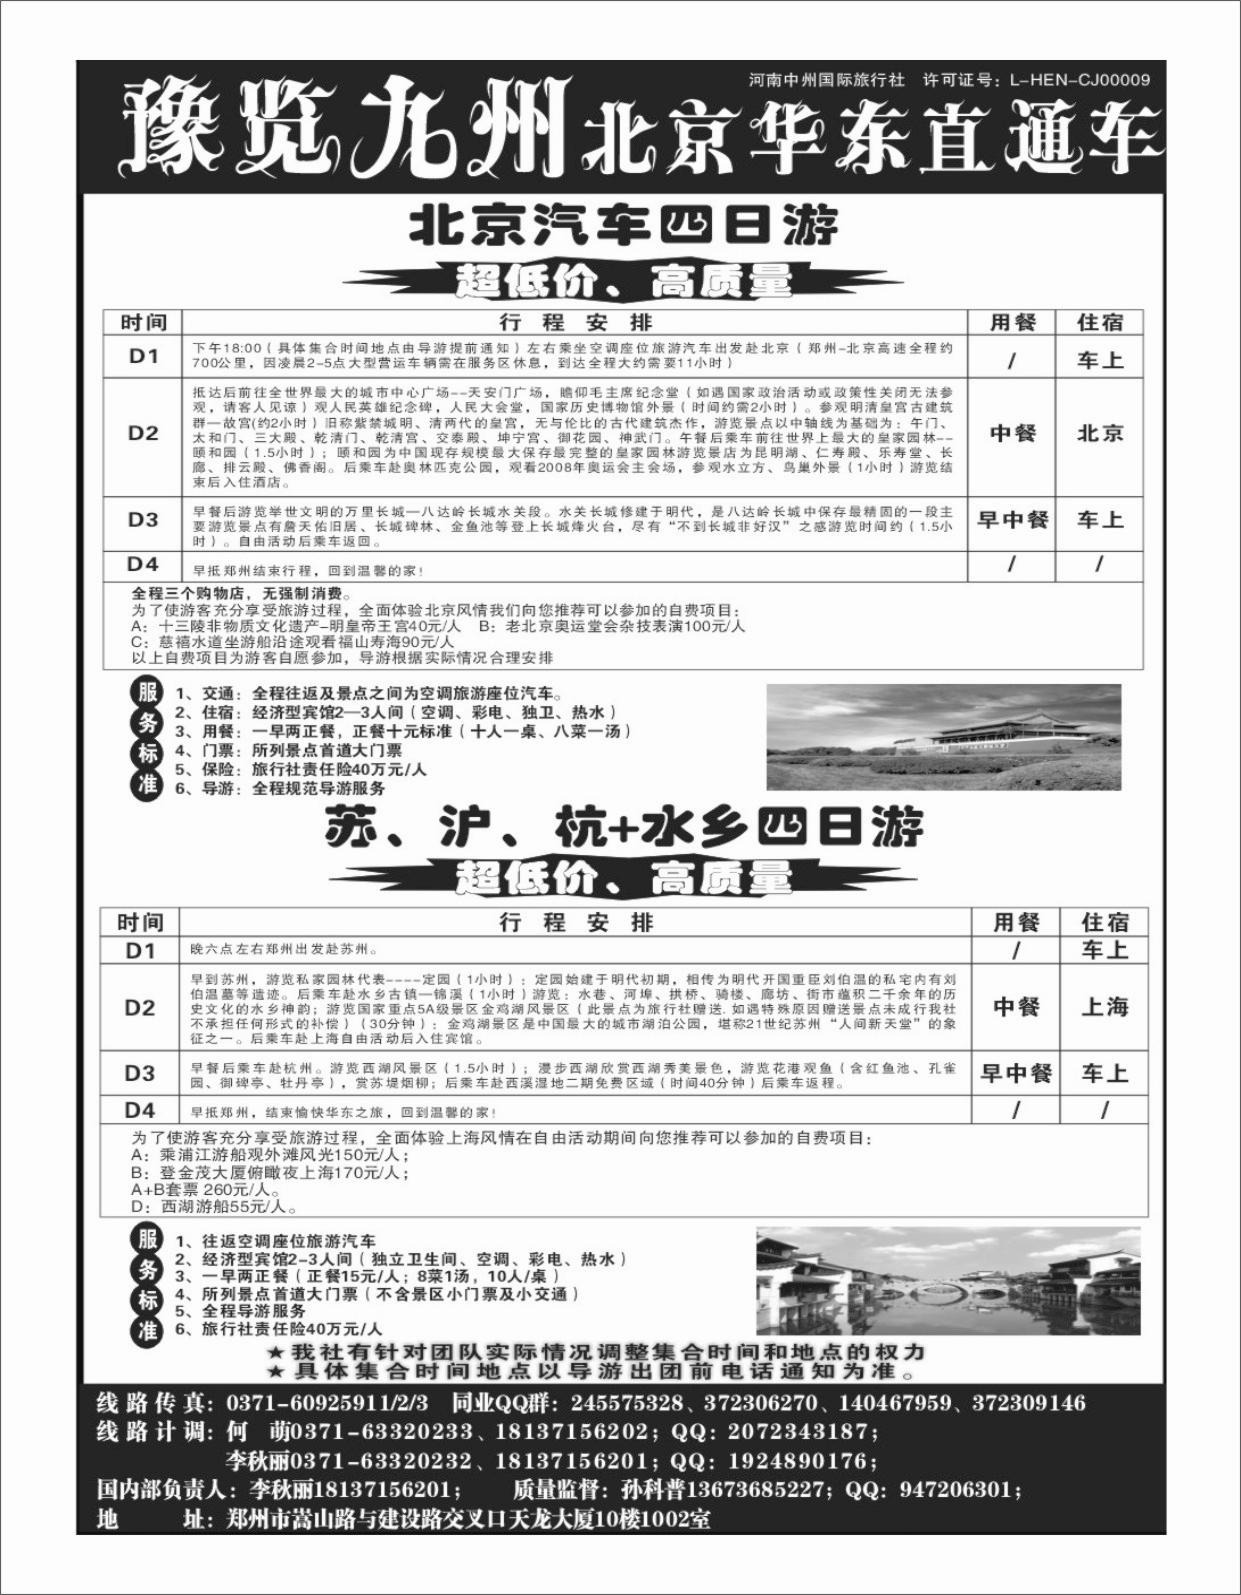 北京华东线 -预览九州